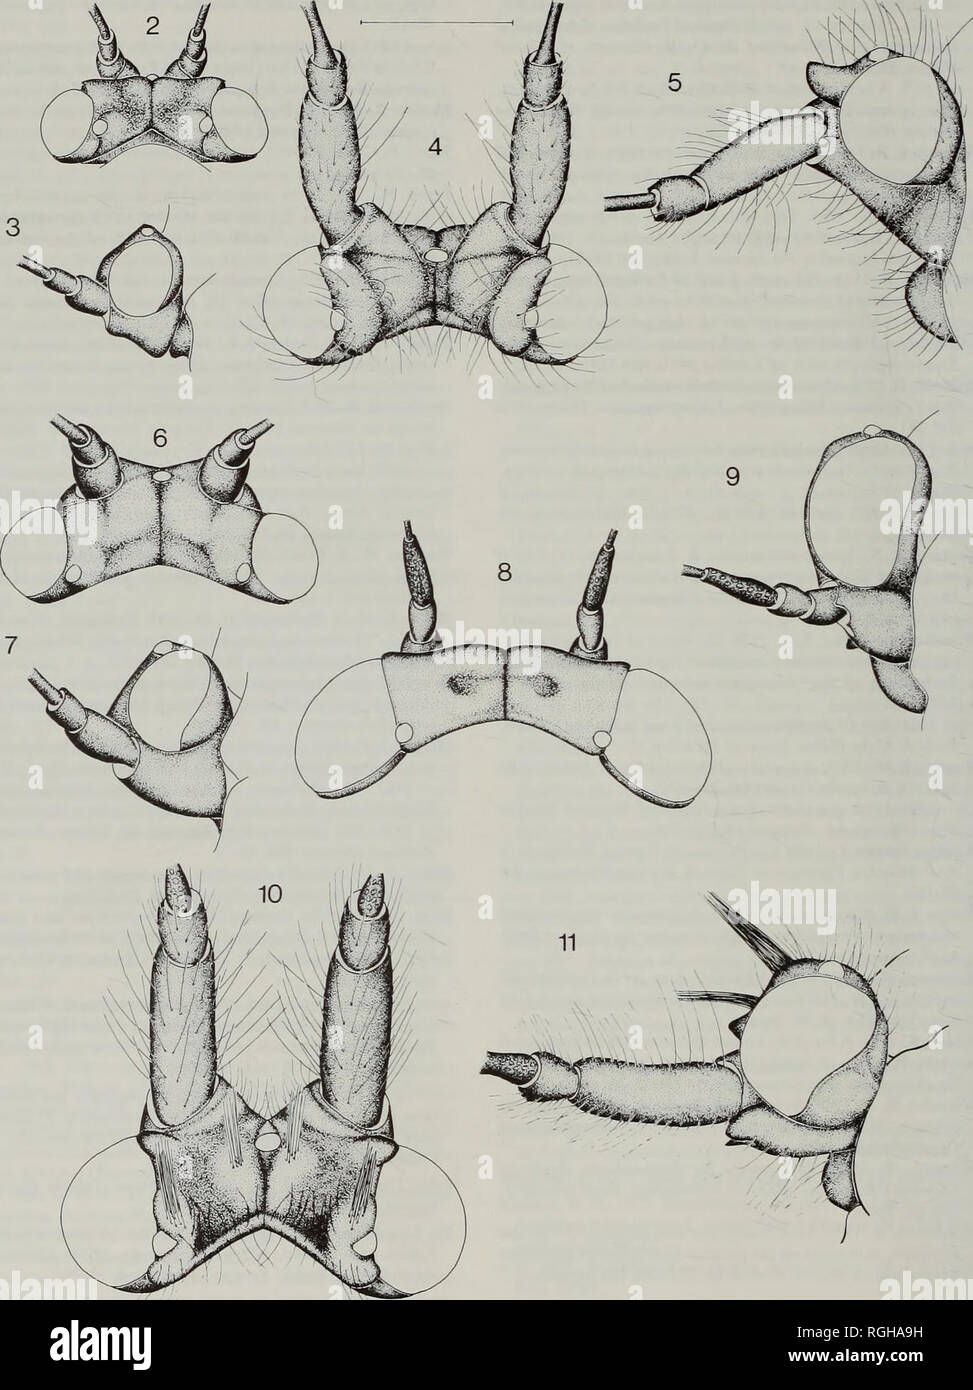 . Bulletin des British Museum (Natural History) Entomologie. 170 D. HOLLIS & Amp; S. S. BROOMFIELD. Abb. 2-11 Dynopsyllinae, Leiter Struktur. 2, 3, Diceraopsylla bnmettii: 2, dorsalansicht; 3, Seitenansicht. 4, 5, Dvnop - sylla cornuta; 4, dorsalansicht; 5, Seitenansicht. 6, 7, Austrodynopsylla encala; 6, dorsalansicht; 7, Seitenansicht. 8, 9, Triozamia lamborni; 8, dorsalansicht; 9, Seitenansicht. 10, 11, Afrodynopsylla gigantea; 10, dorsalansicht; 11, Seitenansicht. Skalierungslinie: 0,5 mm. Setosity nicht in Abb. 2, 3, 6-9 gezeigt. Bitte beachten Sie, dass diese Bilder extrahiert werden aus der gescannten Seite Bilder, die b Stockfoto